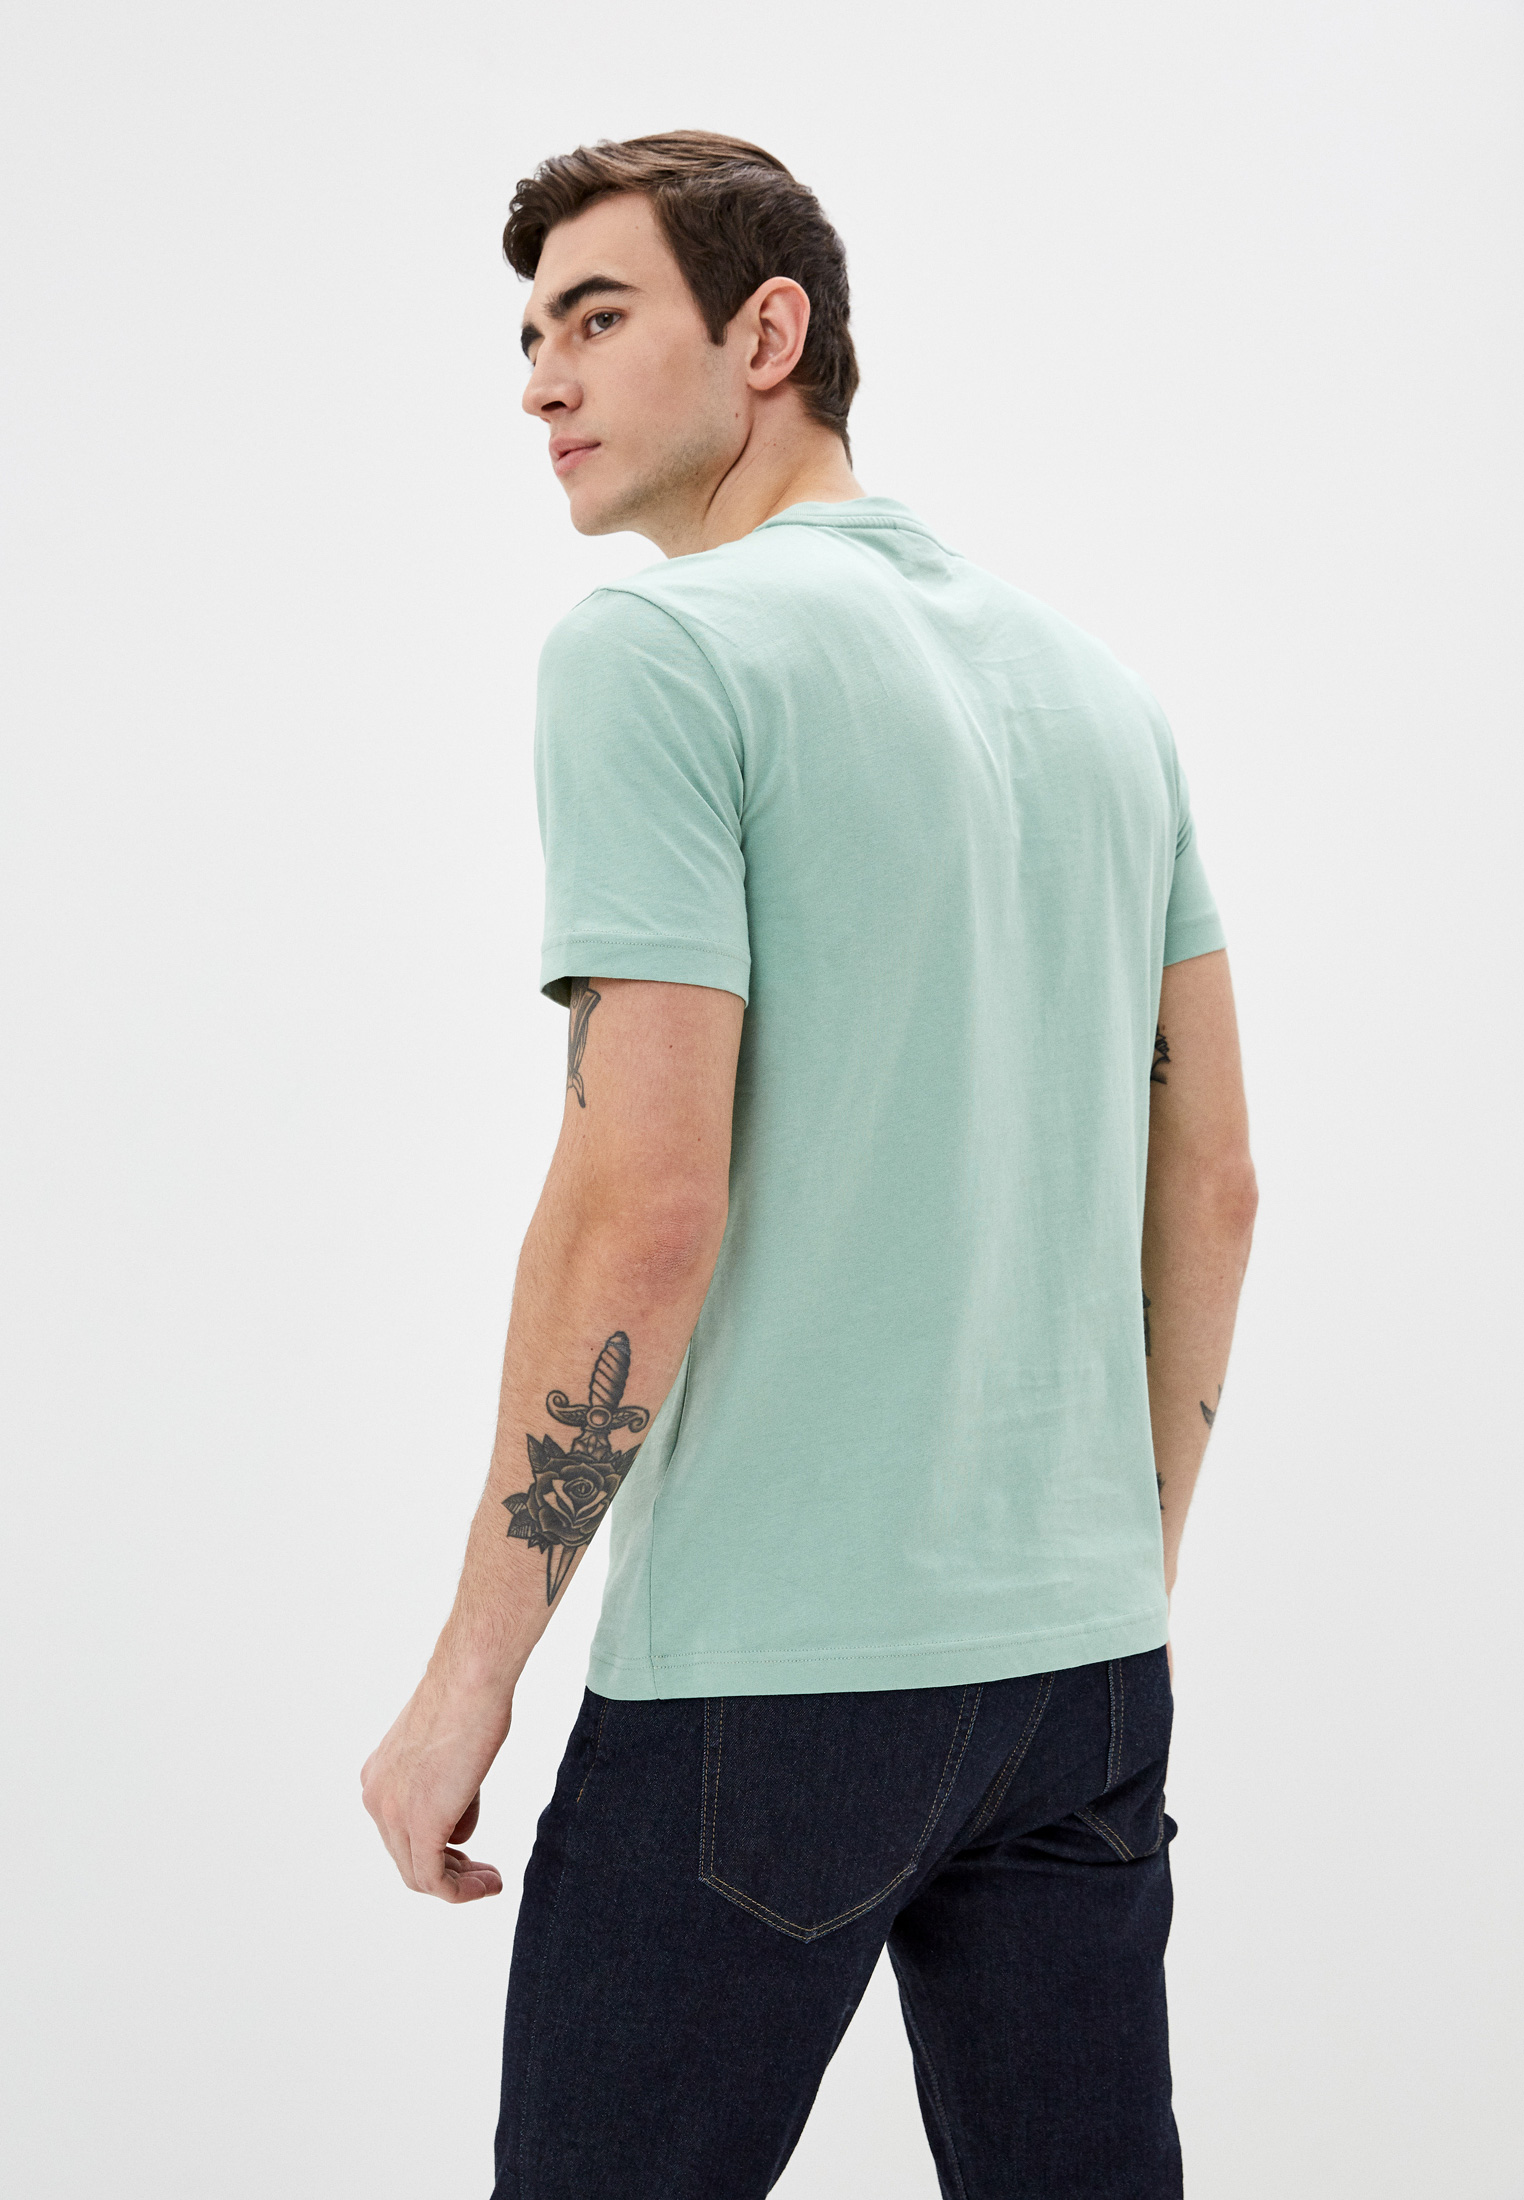 Мужская футболка Calvin Klein (Кельвин Кляйн) k10k103307: изображение 3